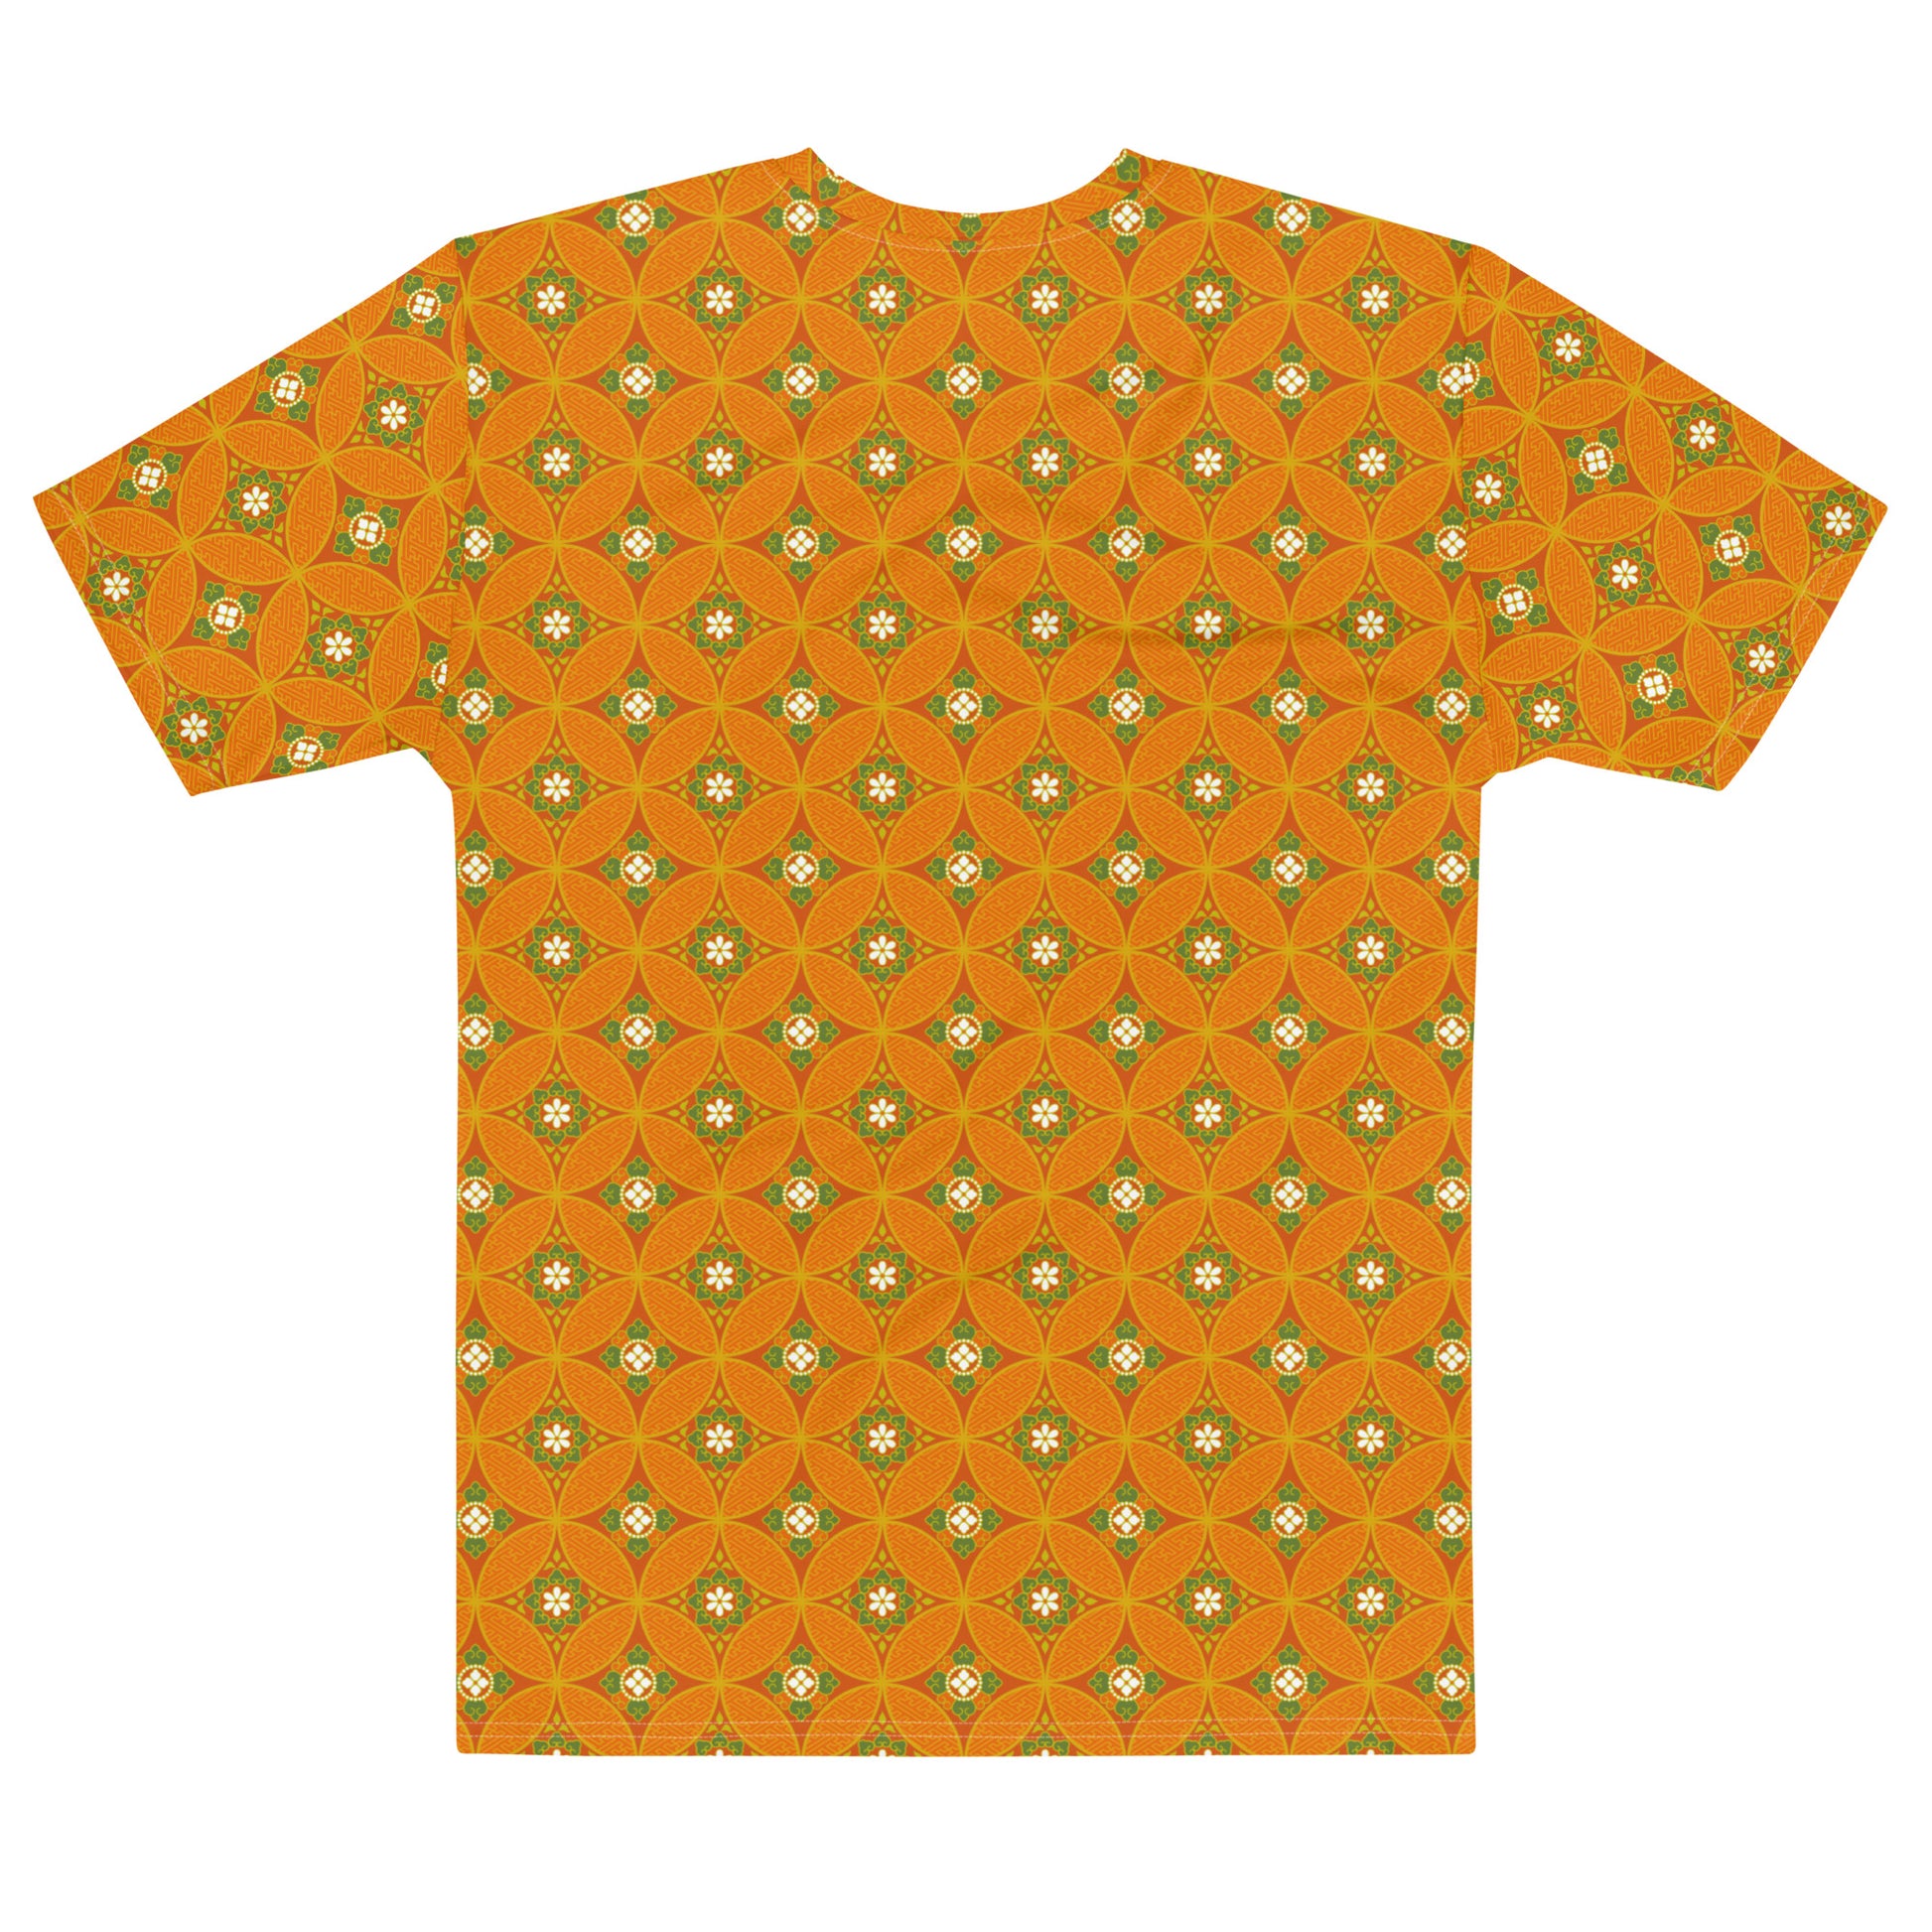 オレンジ色の七宝繋ぎ文様メンズTシャツの背面画像